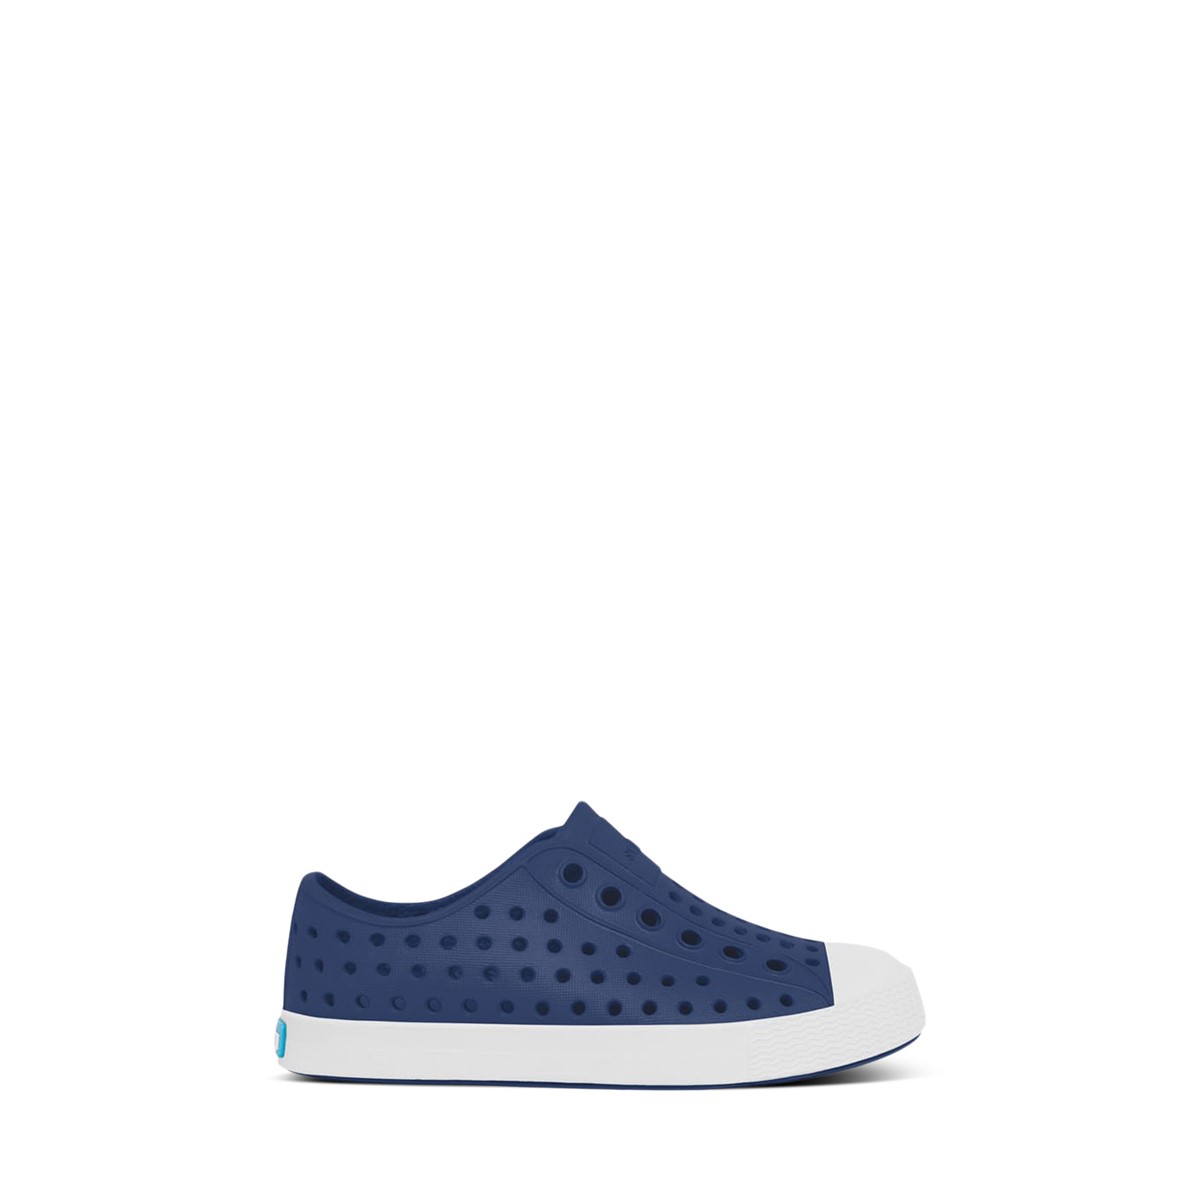 Chaussures sans lacets Jefferson bleu et blanc pour tout-petits